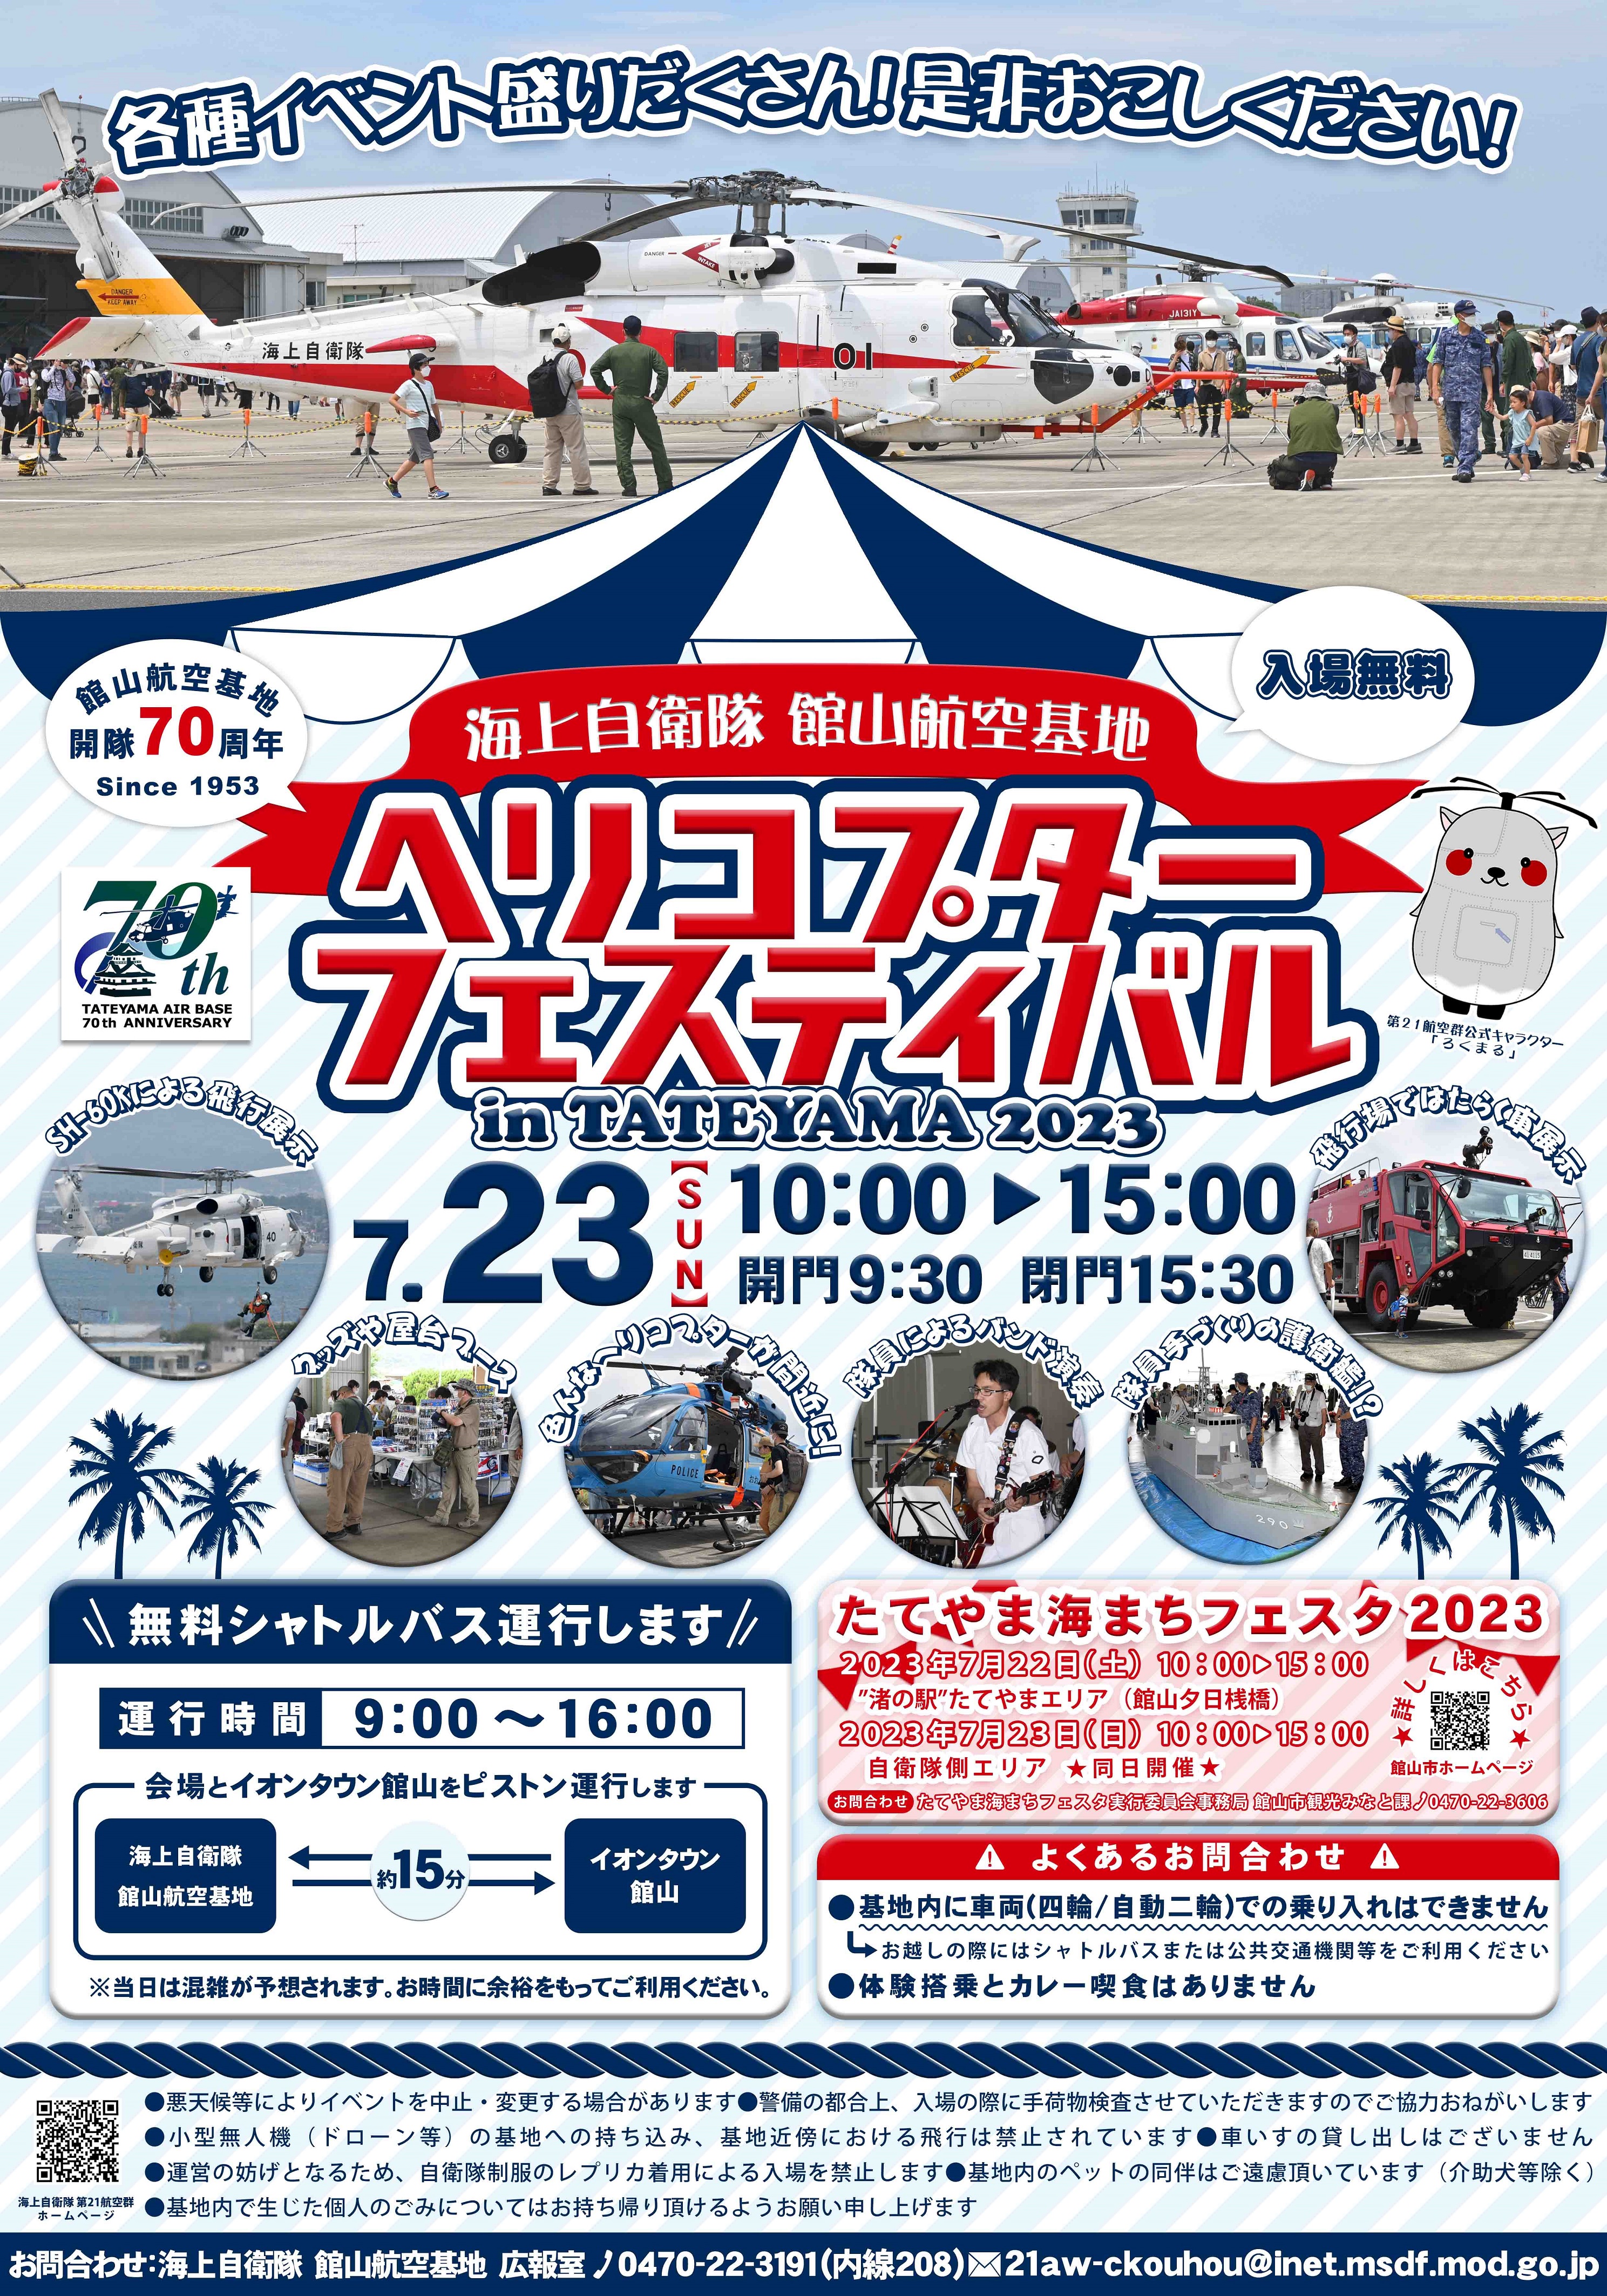 ヘリコプターフェスティバル in TATEYAMA 2023：ポスター